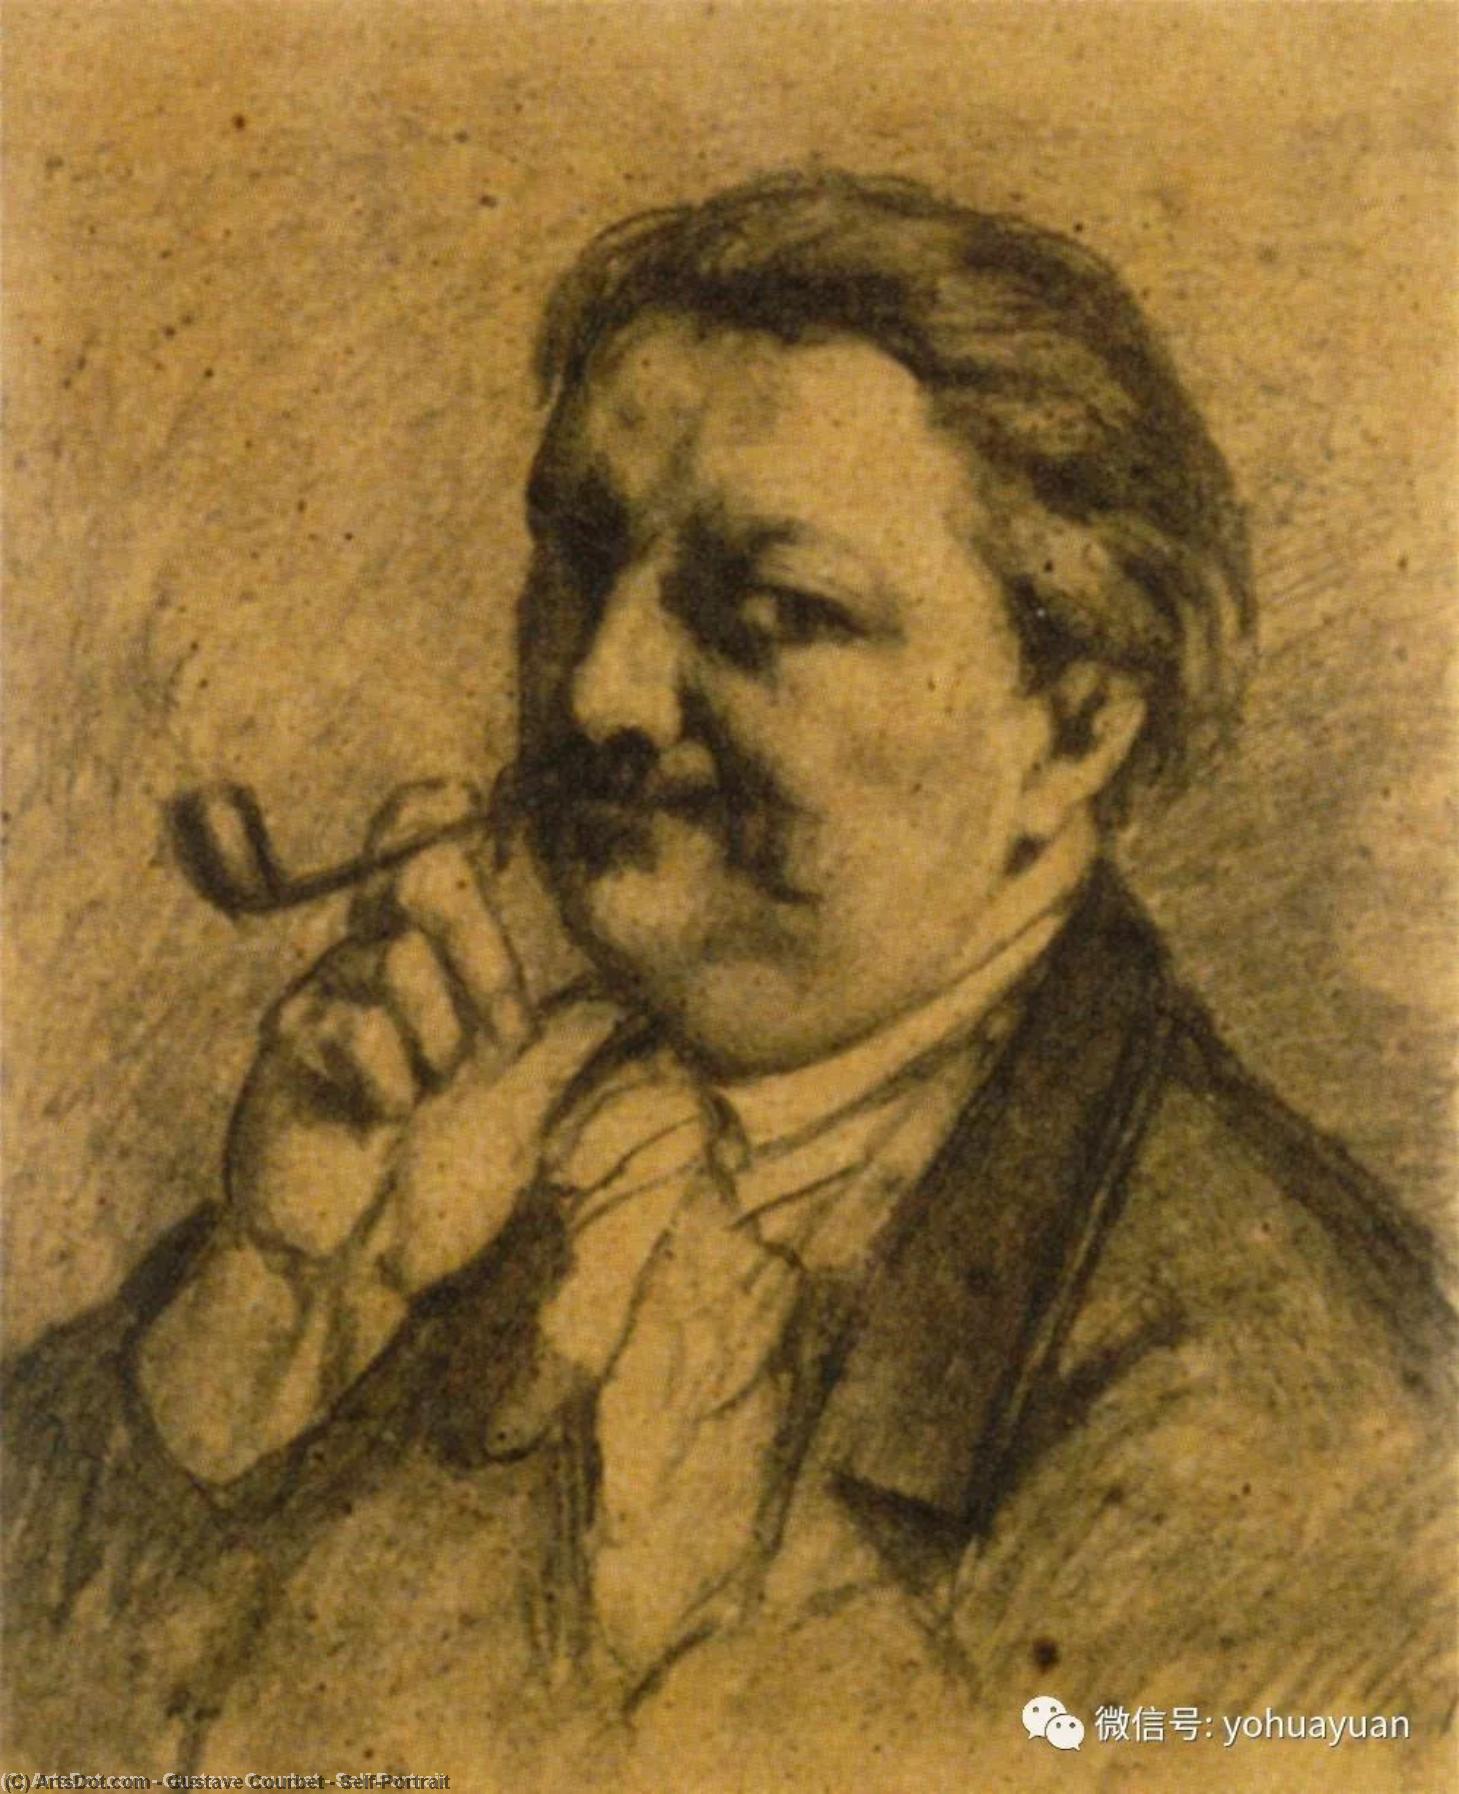 WikiOO.org - Εγκυκλοπαίδεια Καλών Τεχνών - Ζωγραφική, έργα τέχνης Gustave Courbet - Self-Portrait